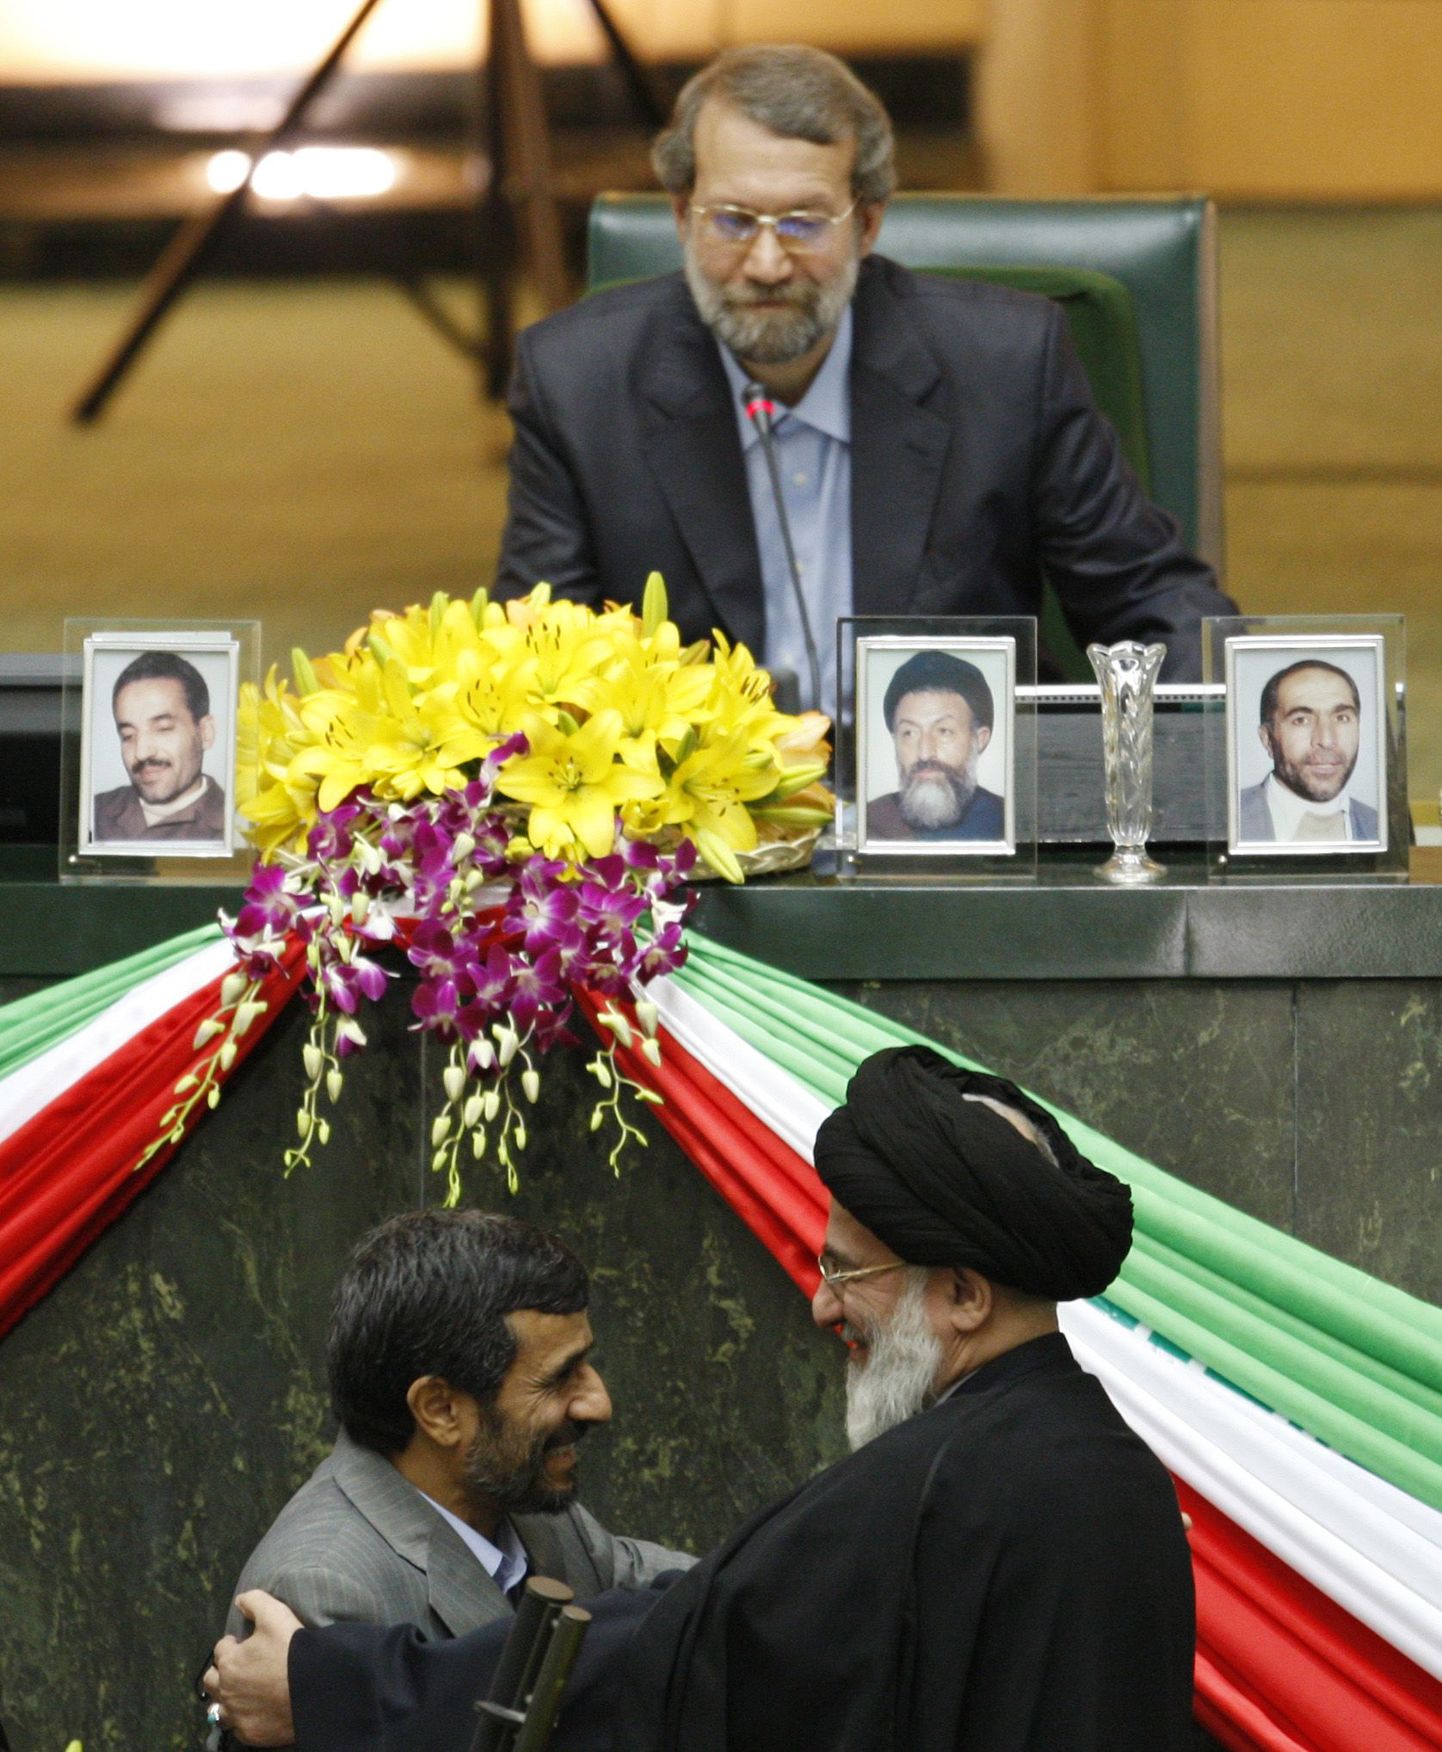 Iraani president Mahmoud Ahmadinejad (ees vasakul) koos ajatolla Mahmoud Hashemi Shahroudiga ametivande andmise pidulikul tseremoonial. Taga paistab parlamendi spiiker Ali Larijani.